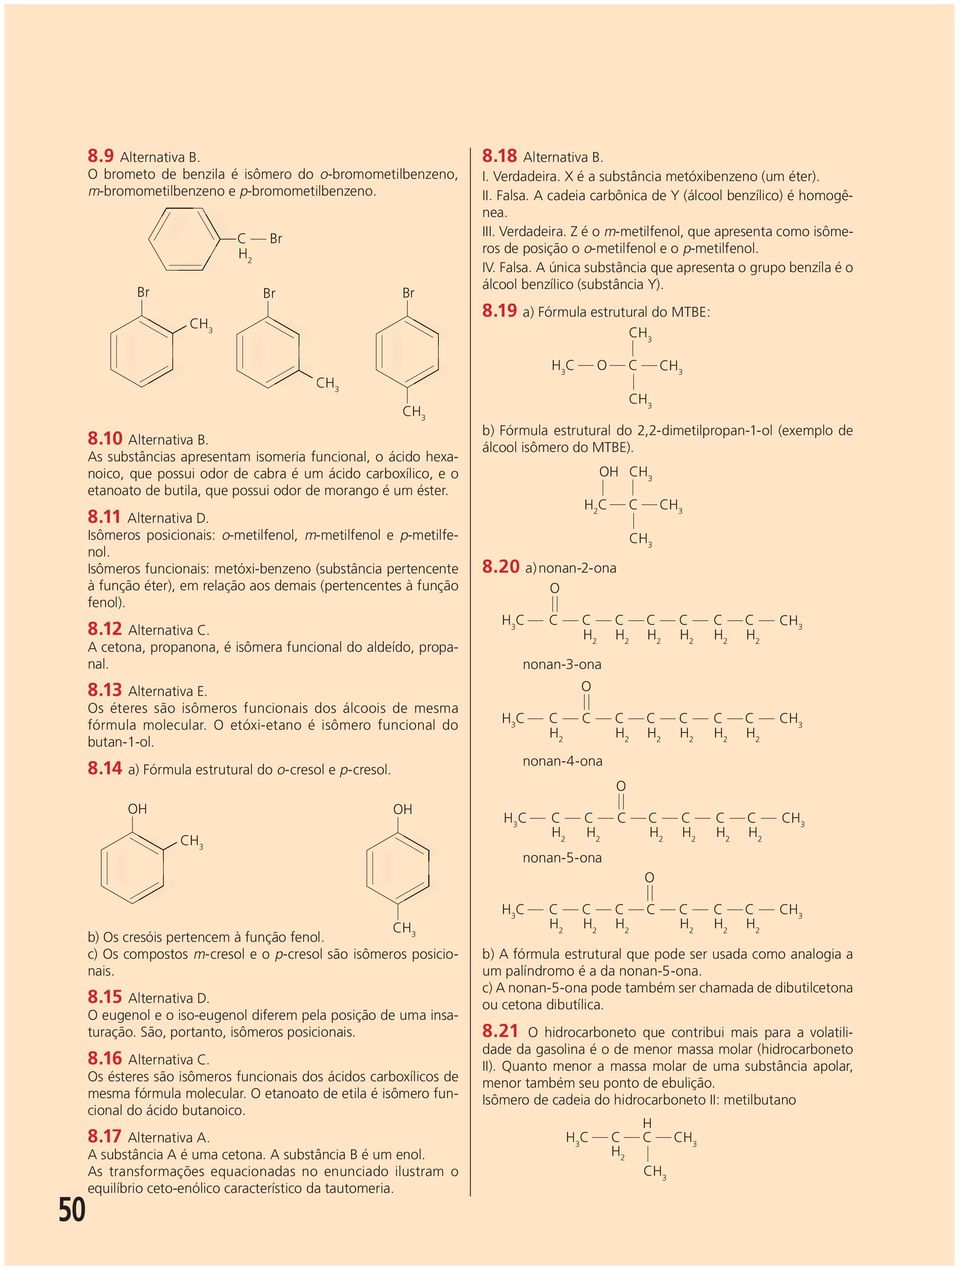 Z é o m-metilfenol, que apresenta como isômeros de posição o o-metilfenol e o p-metilfenol. IV. Falsa. A única substância que apresenta o grupo benzíla é o álcool benzílico (substância Y). 8.